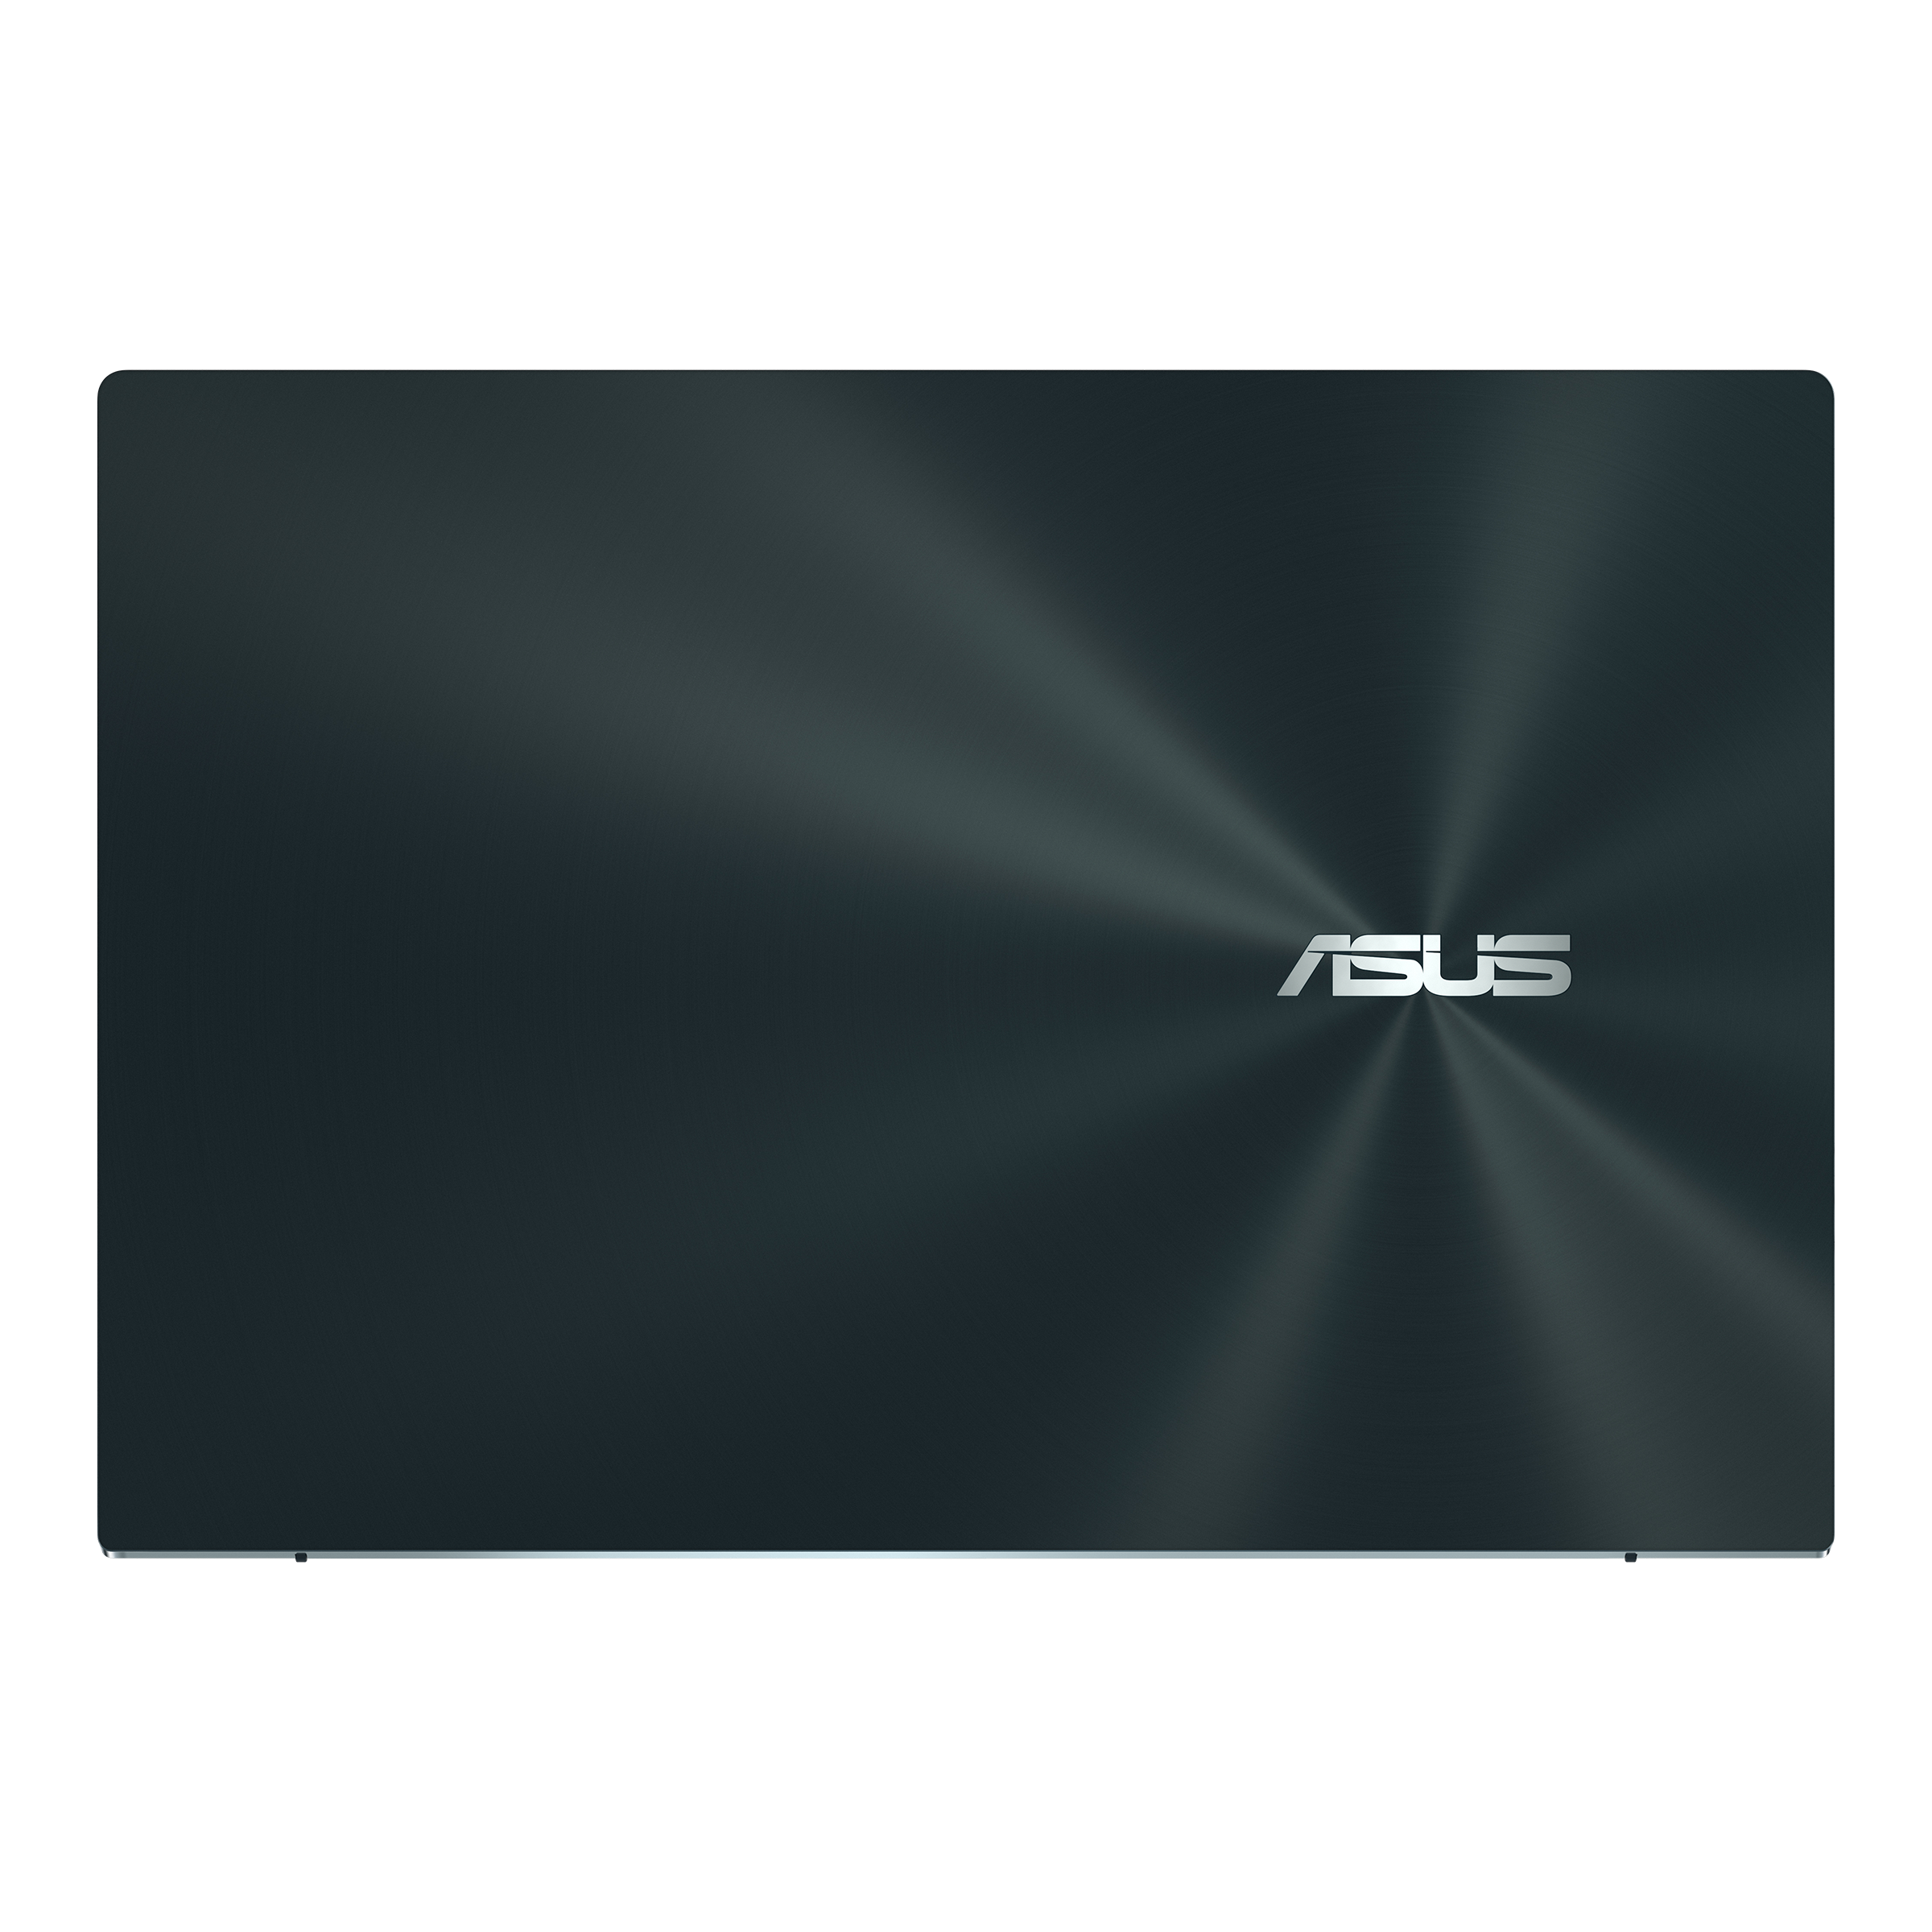 Asus zenbook pro duo ux482eg